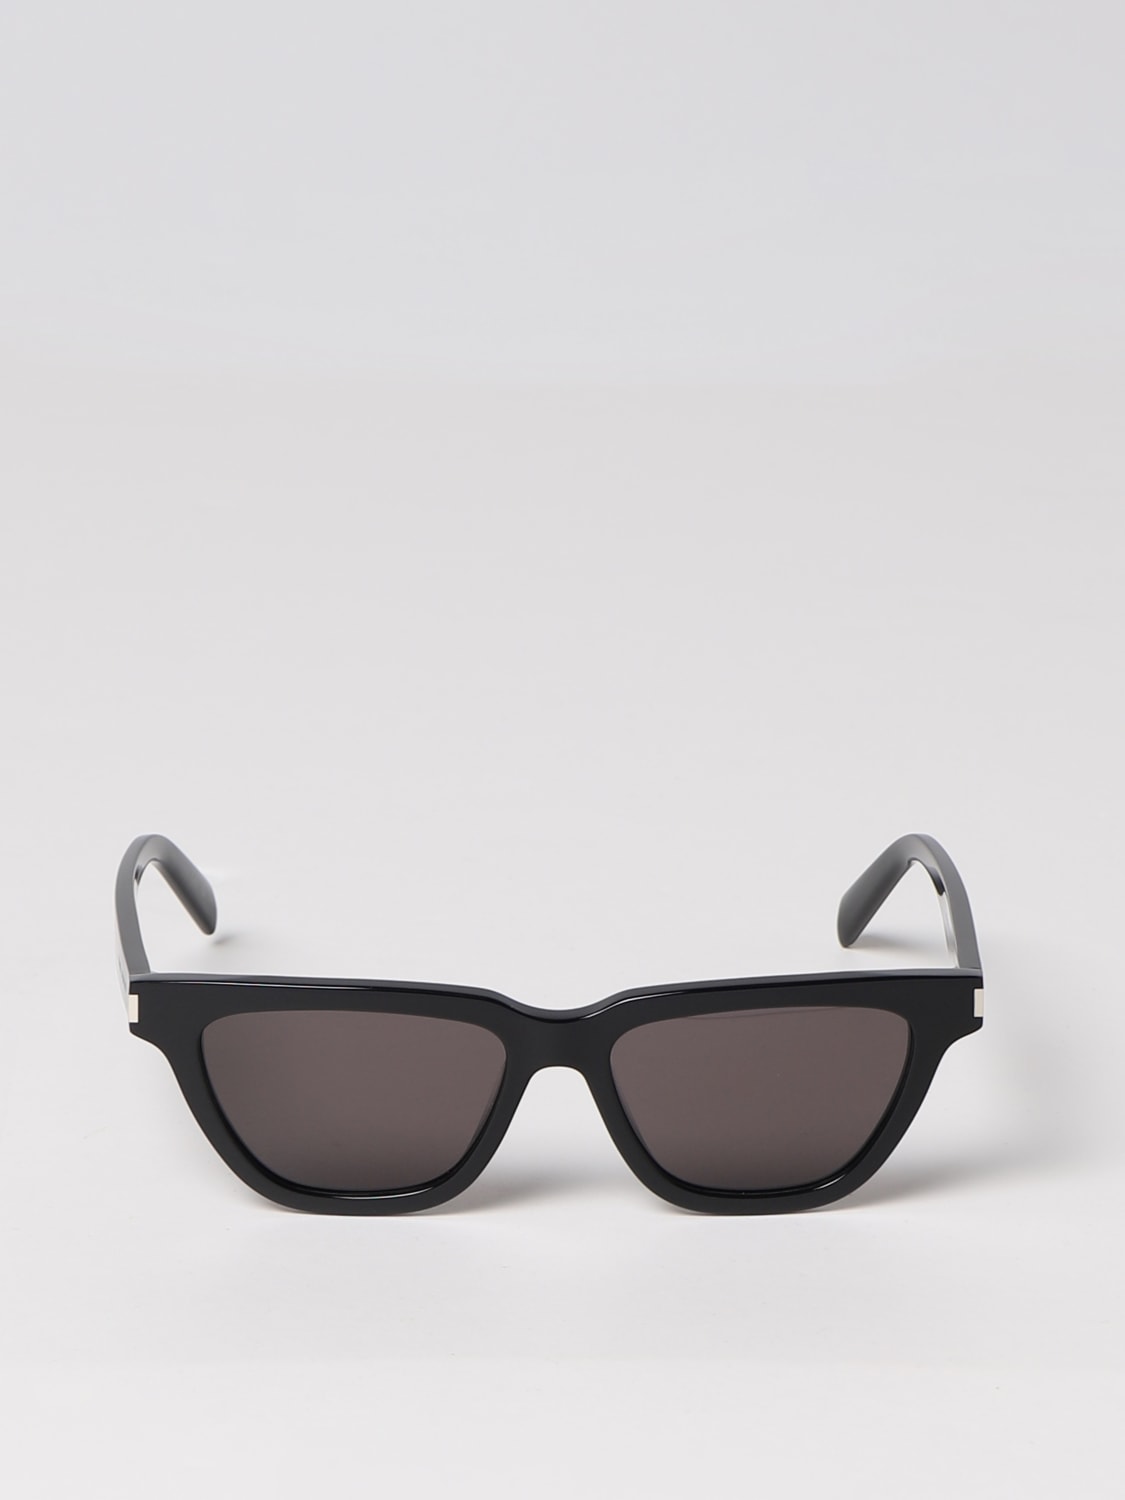 SAINT LAURENT: SL 462 Sulpice acetate sunglasses - Black  Saint Laurent  sunglasses 660372Y9901 online at